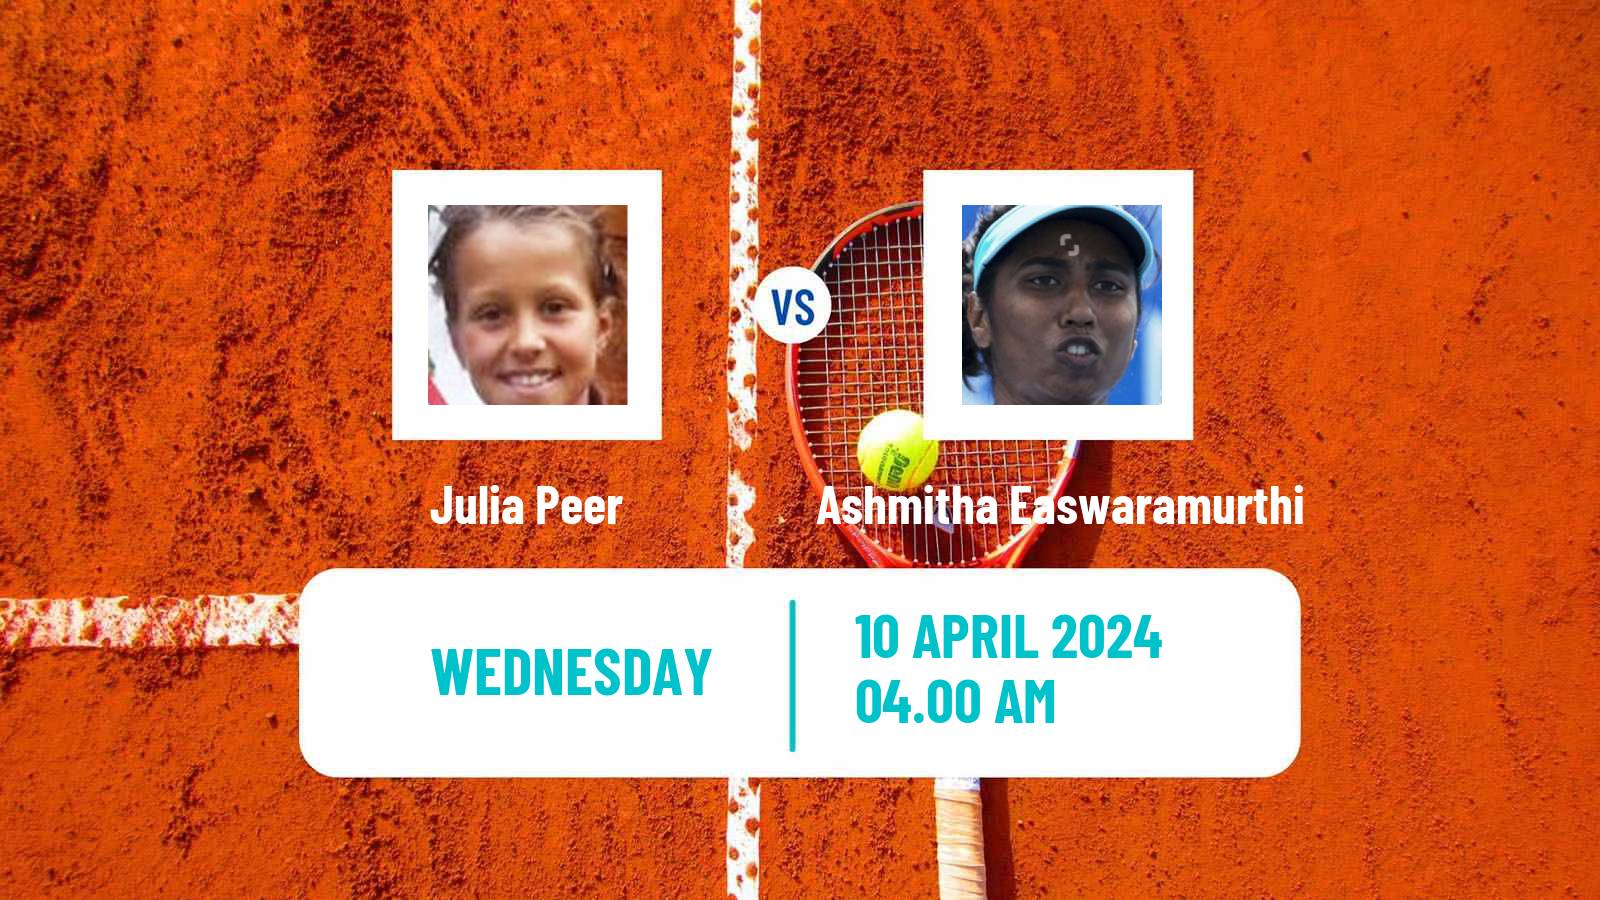 Tennis ITF W35 Bujumbura 2 Women Julia Peer - Ashmitha Easwaramurthi